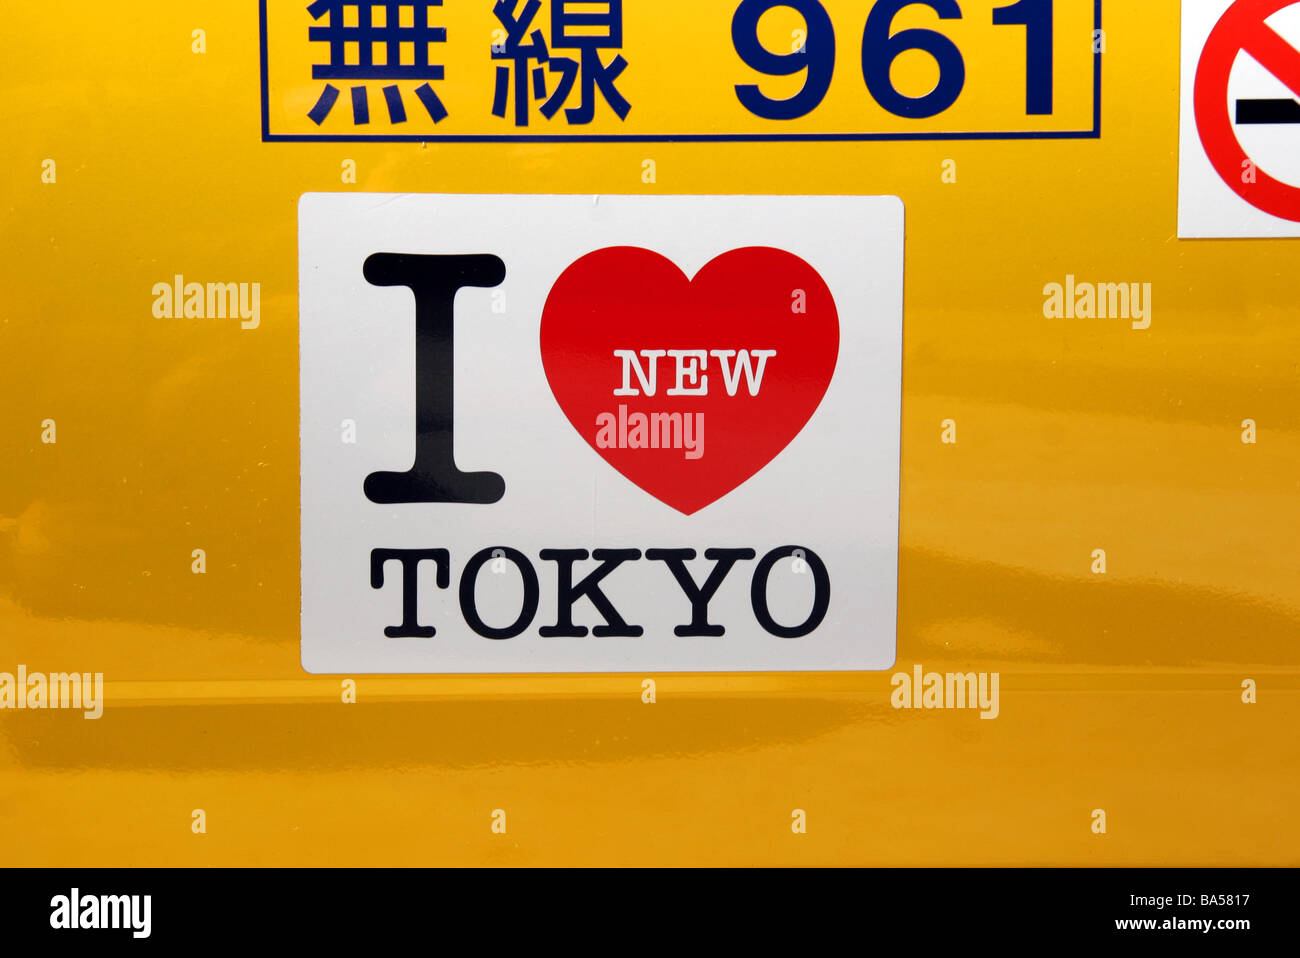 J'aime Tokyo autocollant sur porte de yellow taxi cab à Tokyo au Japon Banque D'Images